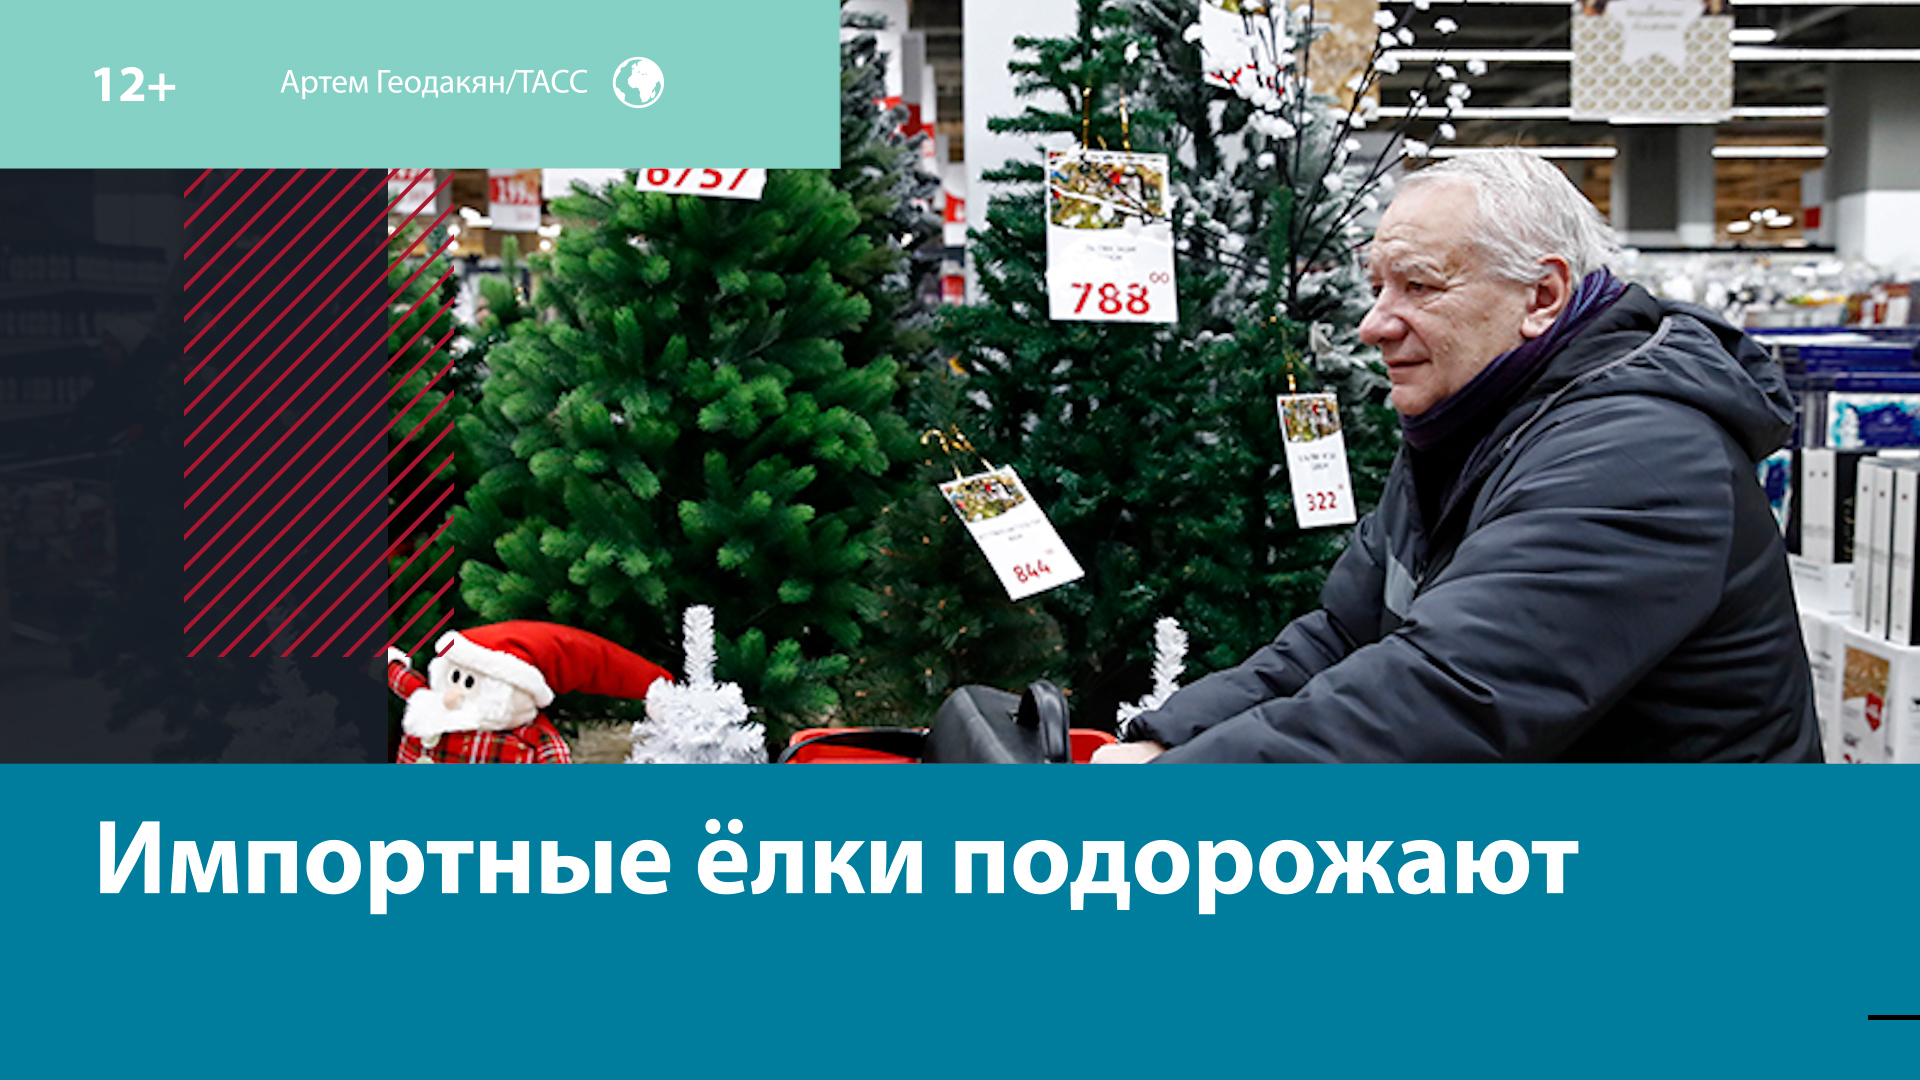 В этом году почти в 2 раза вырастет цена на импортные новогодние ёлки — Москва FM